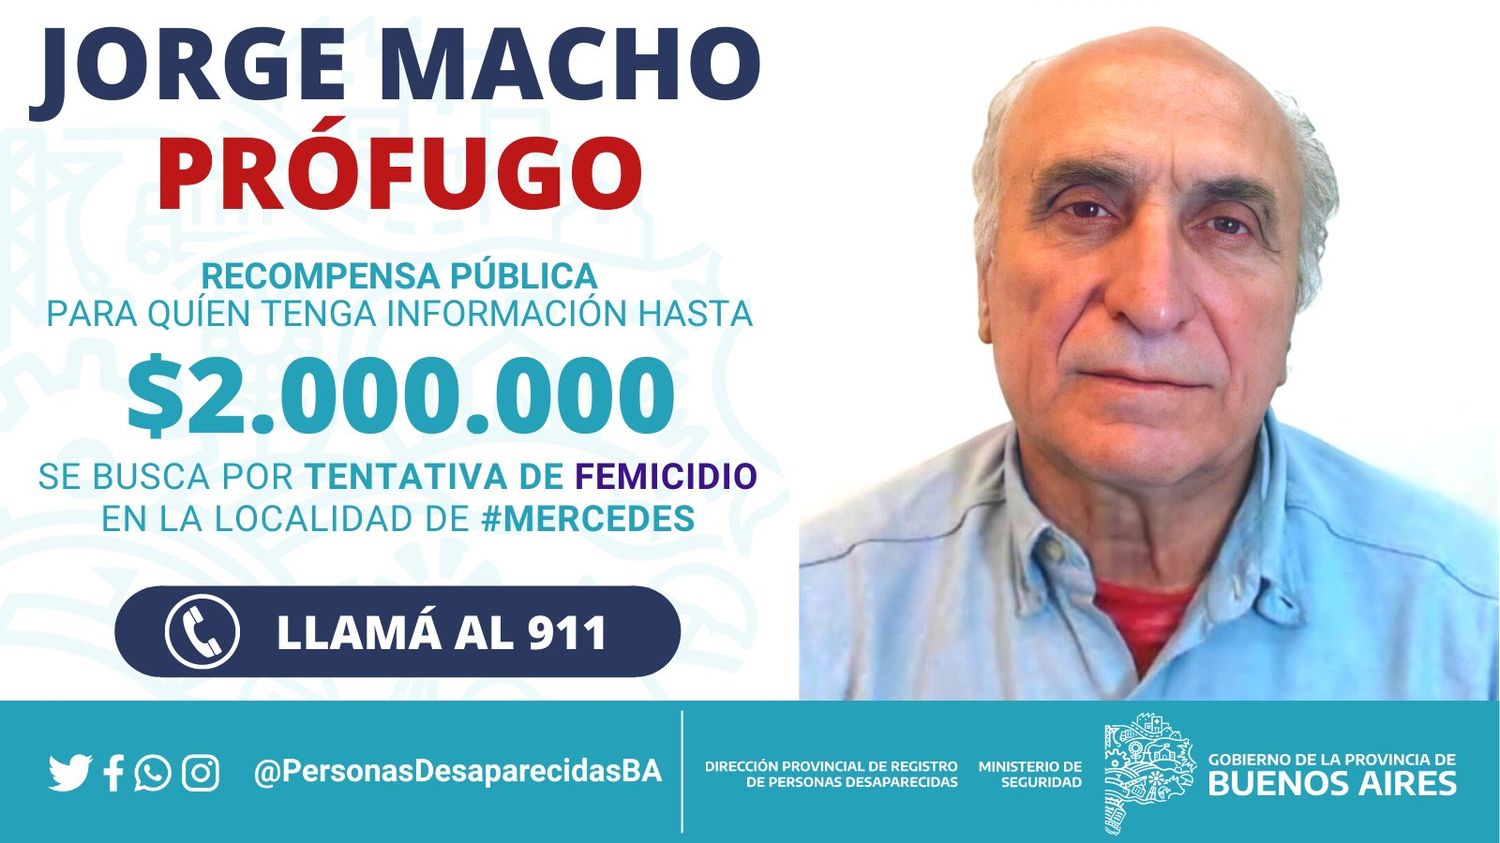 Mercedes: Recompensa de hasta 2 millones de pesos por el prófugo Jorge Macho, acusado de intento de femicidio